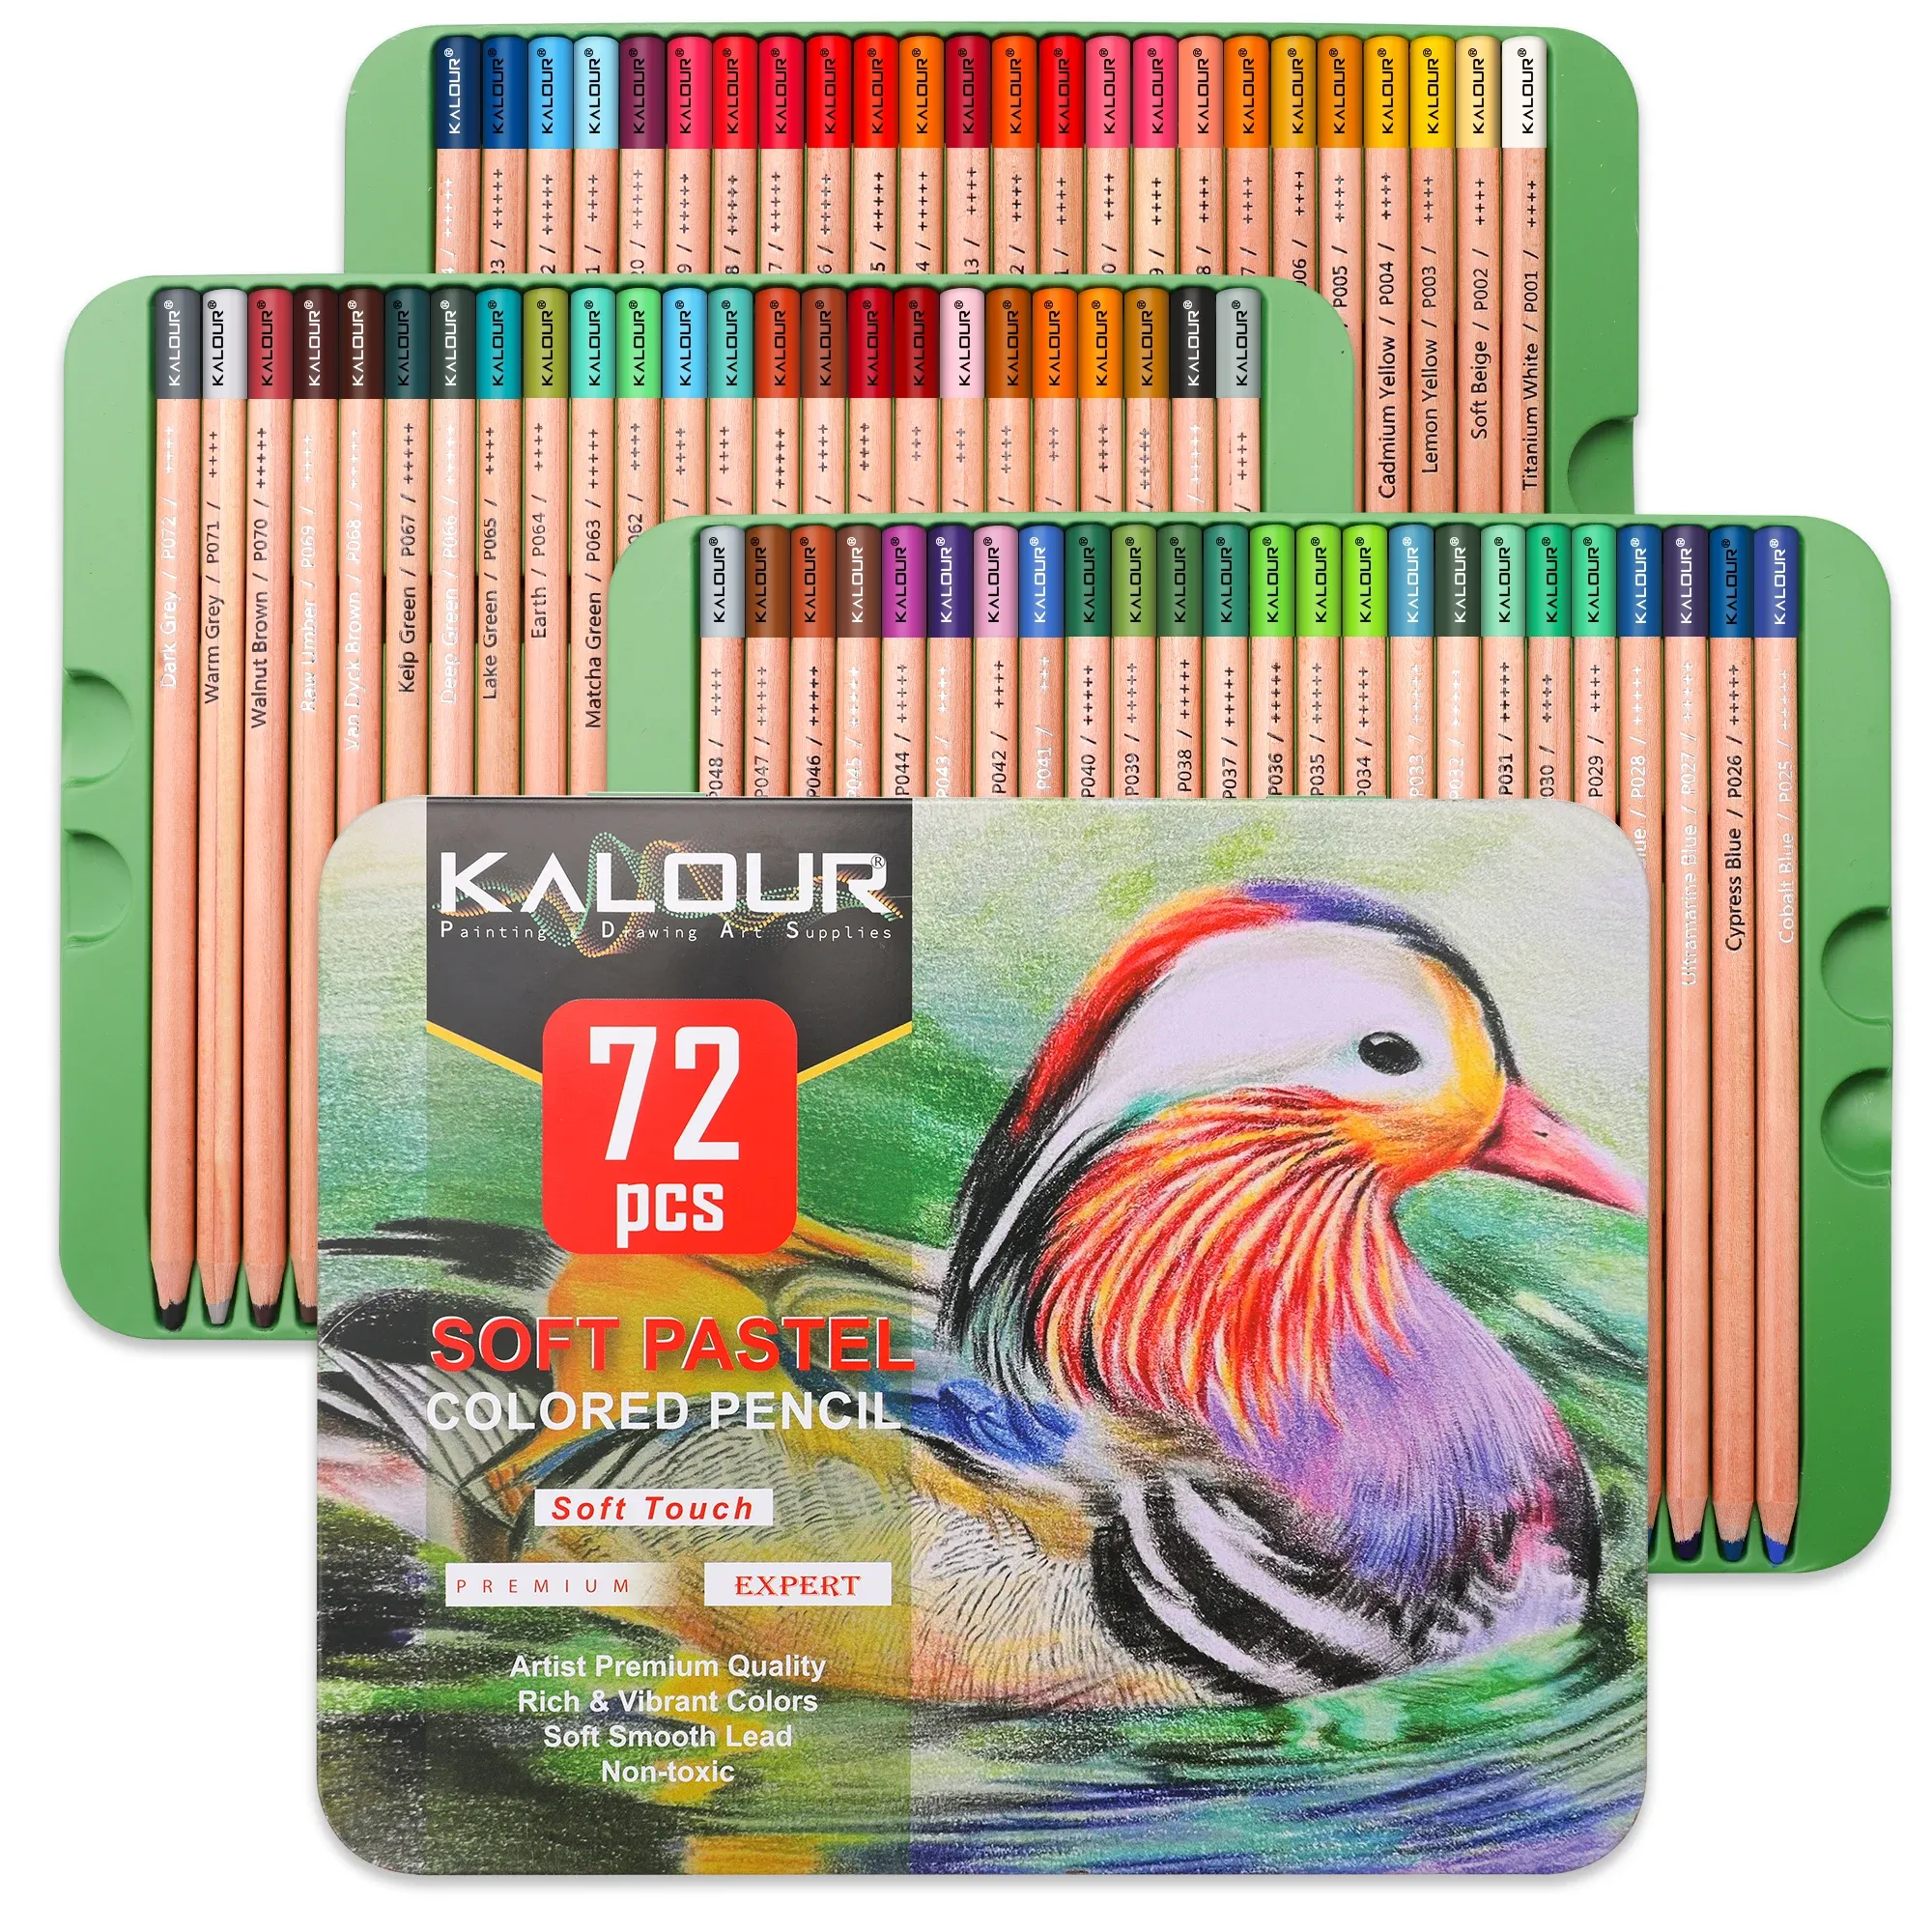 Bleistifte Kalour 50/72 PCs lebendige Farben Weichkern weiche pastellfarbene Holzkohlestifte in Blechkasten, für Anfänger Pro -Künstler